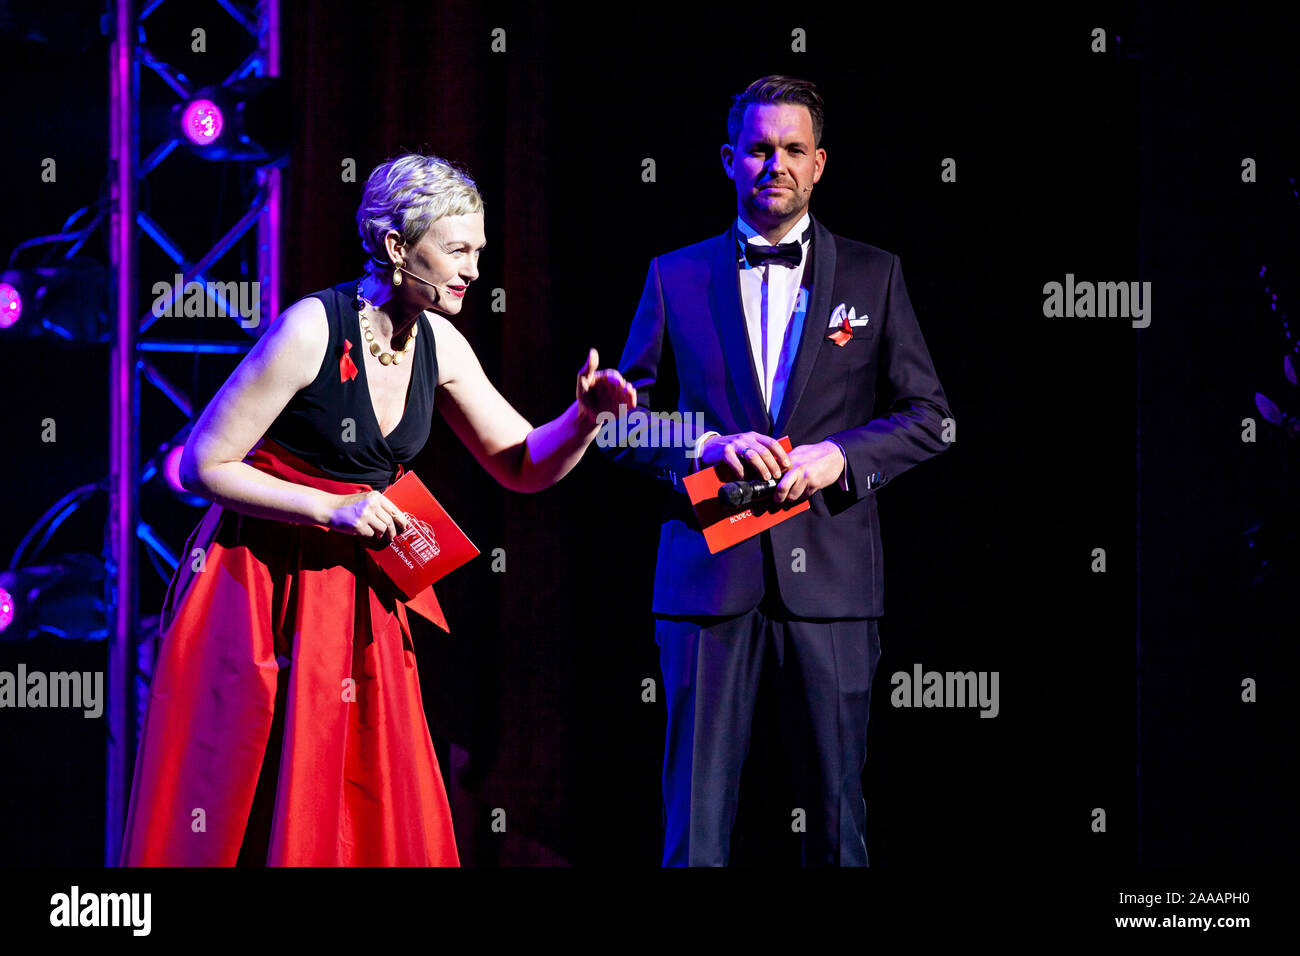 Karen Heinrichs und Matthias Killing bei der 14. Hoffe Gala 2019 im Schauspielhaus. Dresden, 16.11.2019 Stockfoto